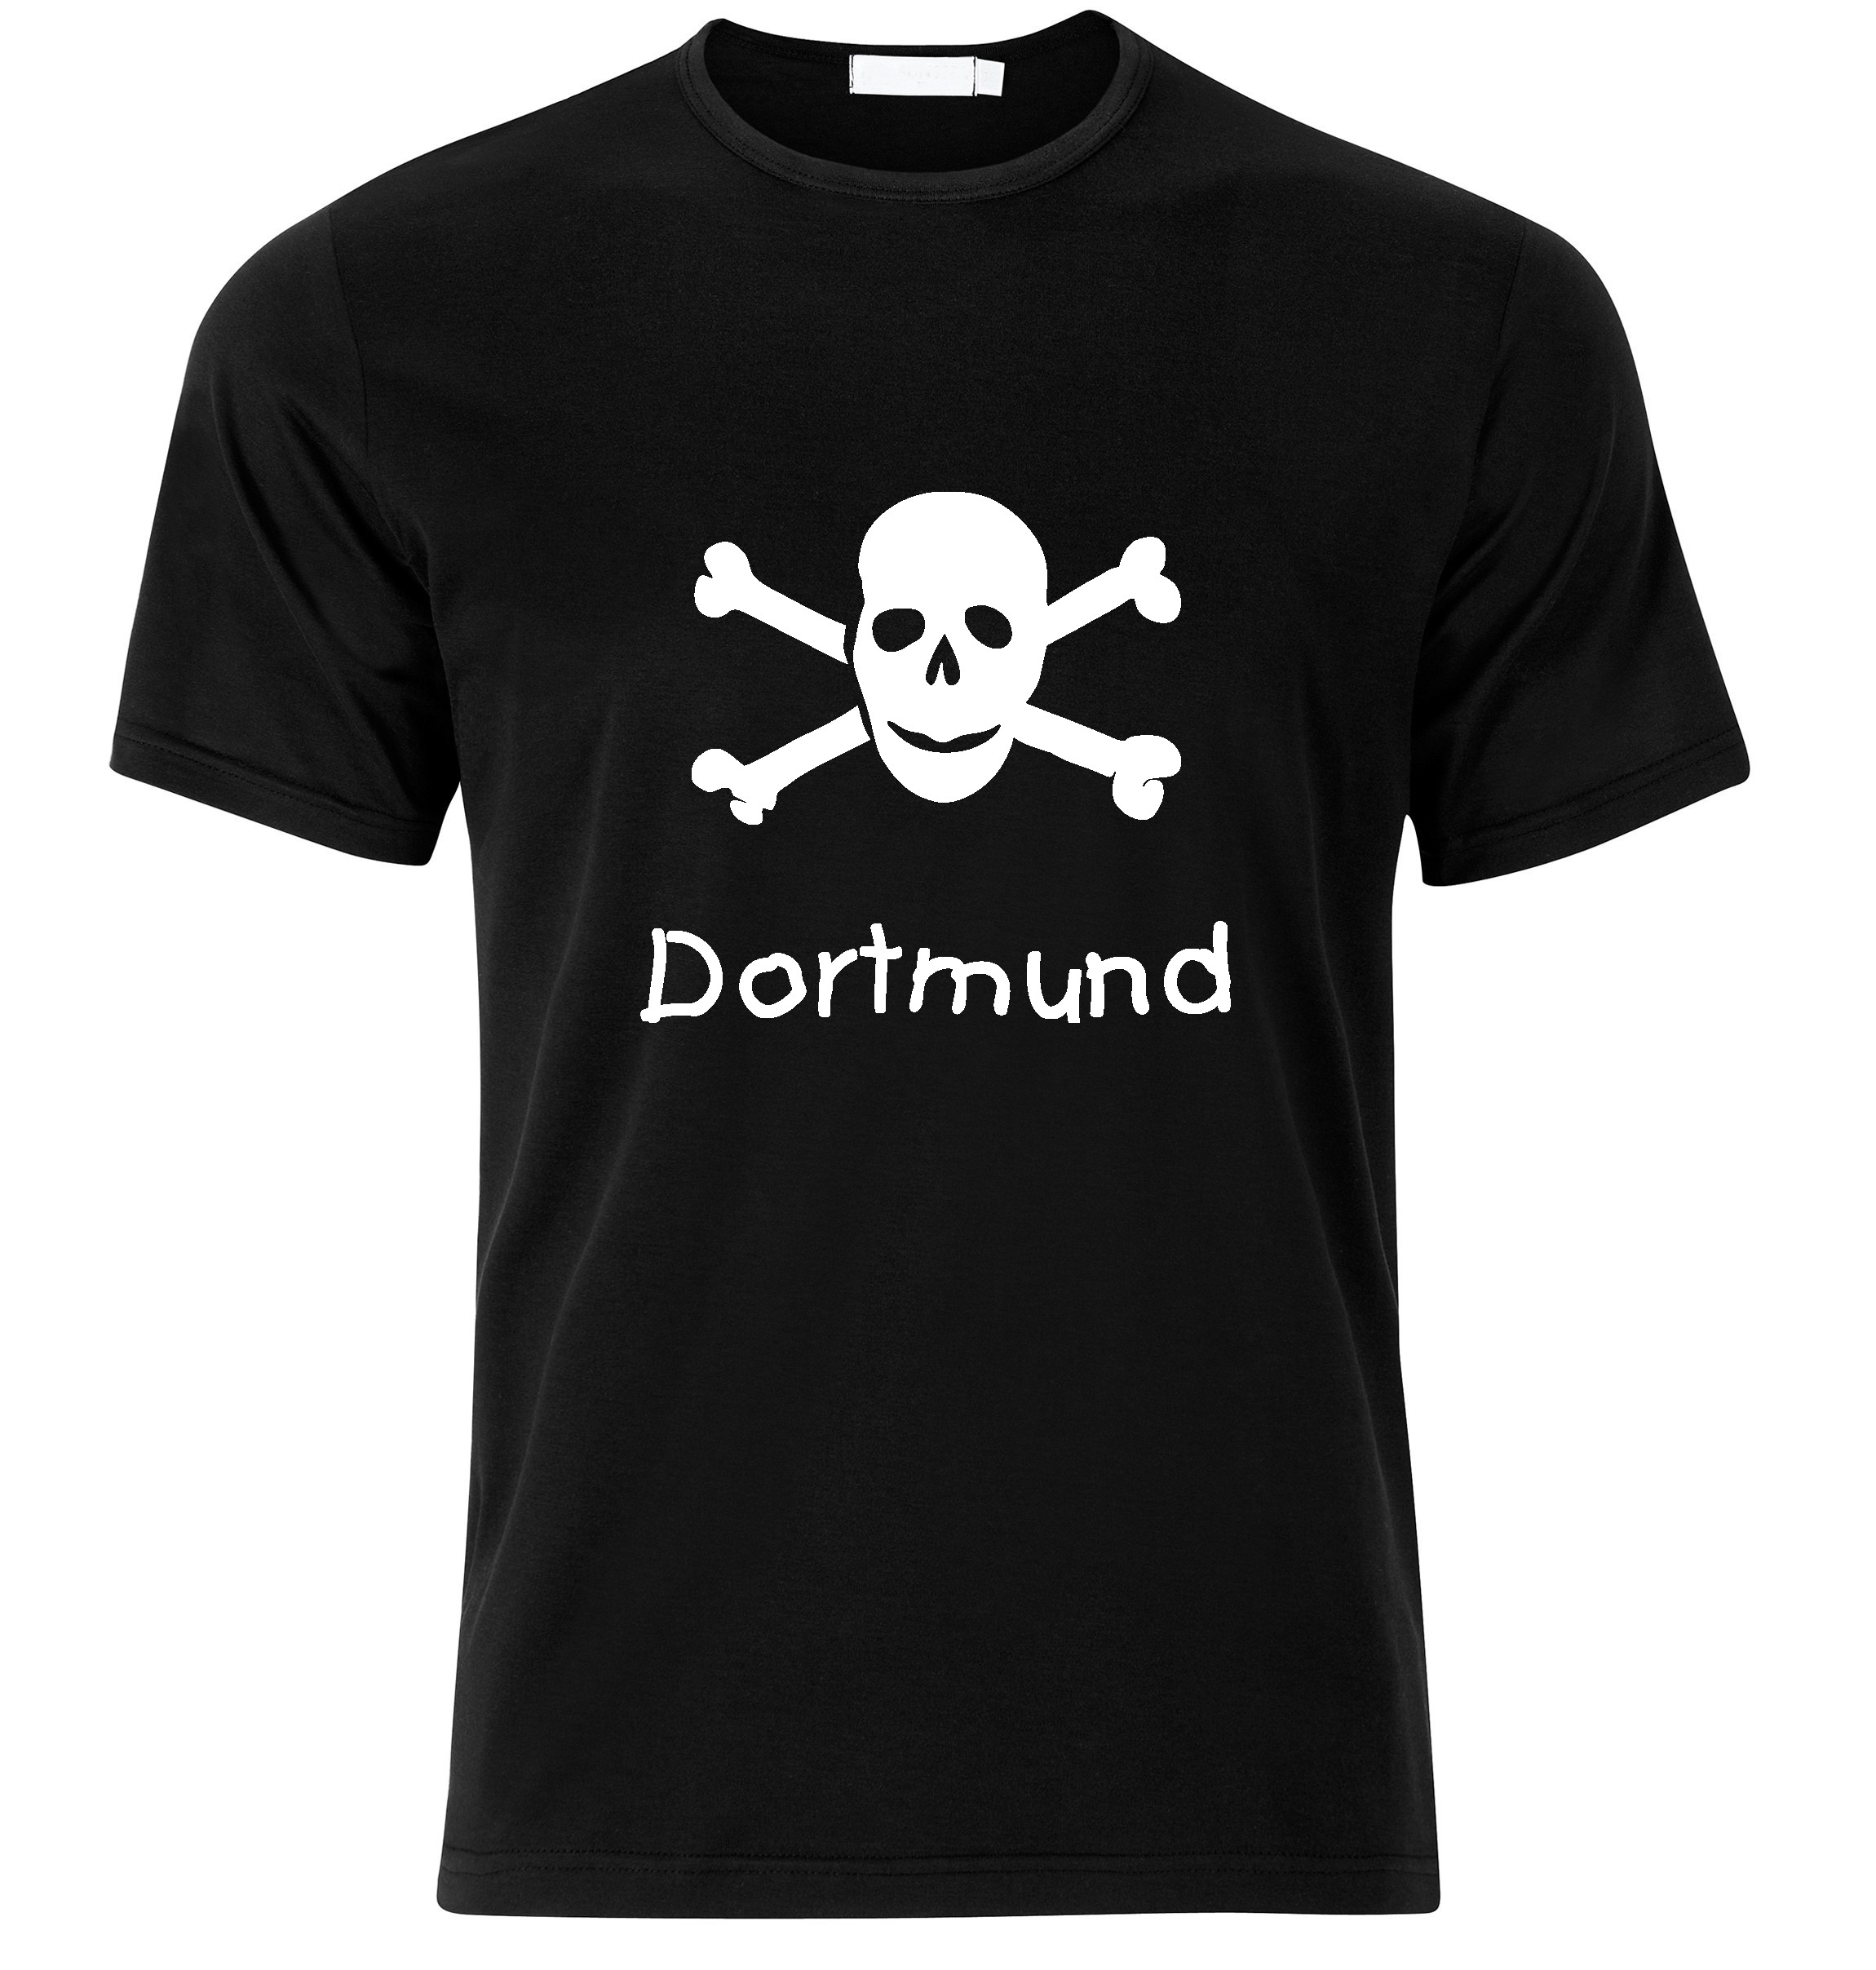 T-Shirt Dortmund Jolly Roger, Totenkopf